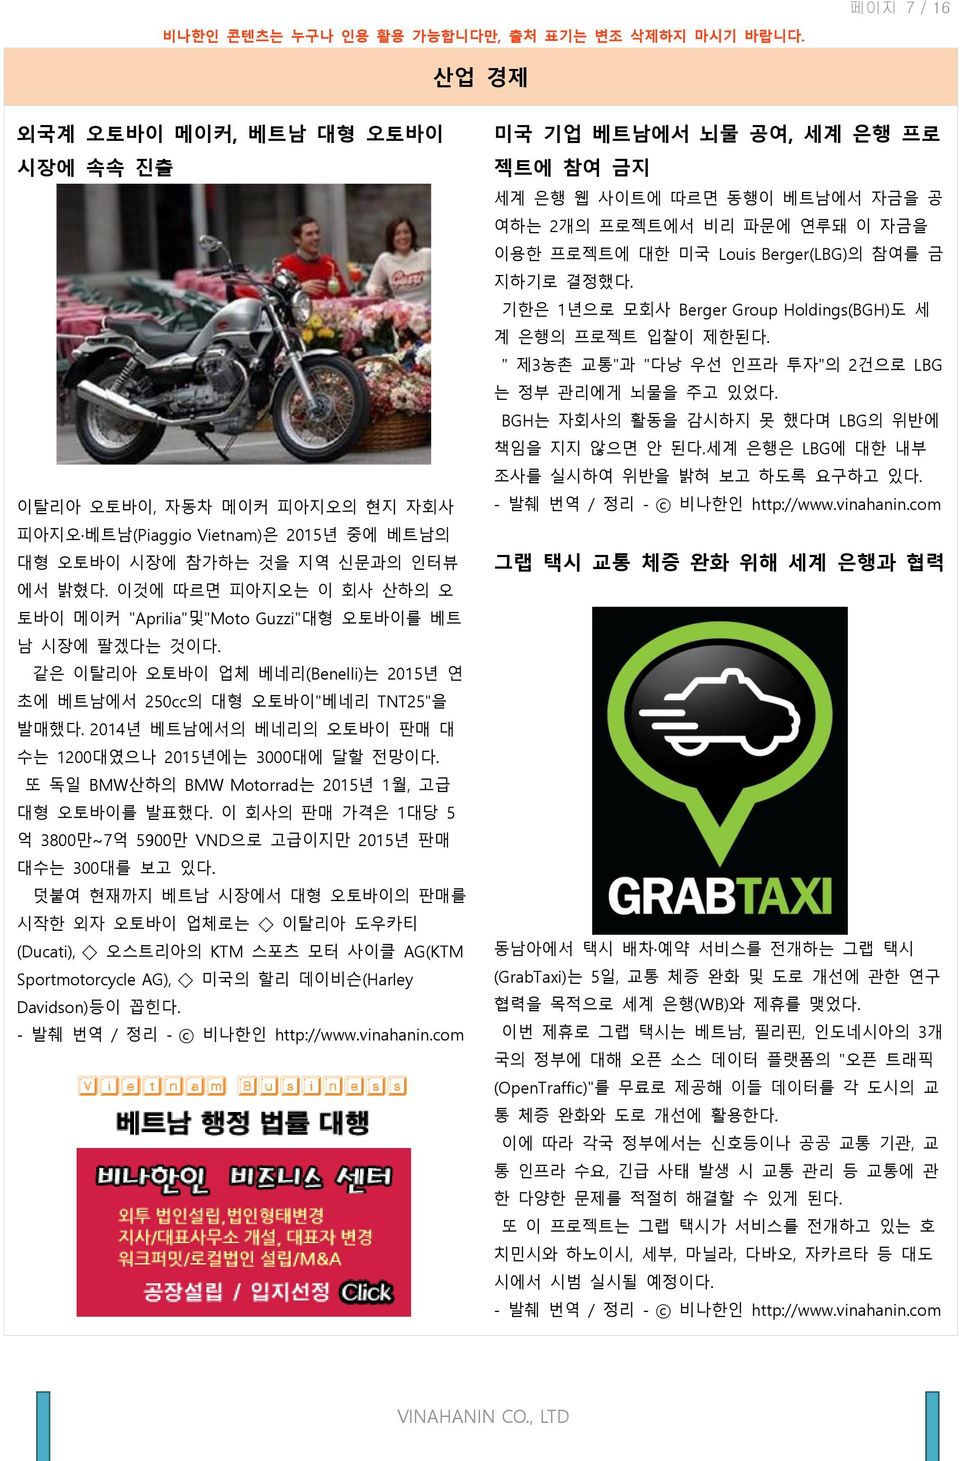 이것에 따르면 피아지오는 이 회사 산하의 오 토바이 메이커 "Aprilia"및"Moto Guzzi"대형 오토바이를 베트 남 시장에 팔겠다는 것이다. 같은 이탈리아 오토바이 업체 베네리(Benelli)는 2015년 연 초에 베트남에서 250cc의 대형 오토바이"베네리 TNT25"을 발매했다.